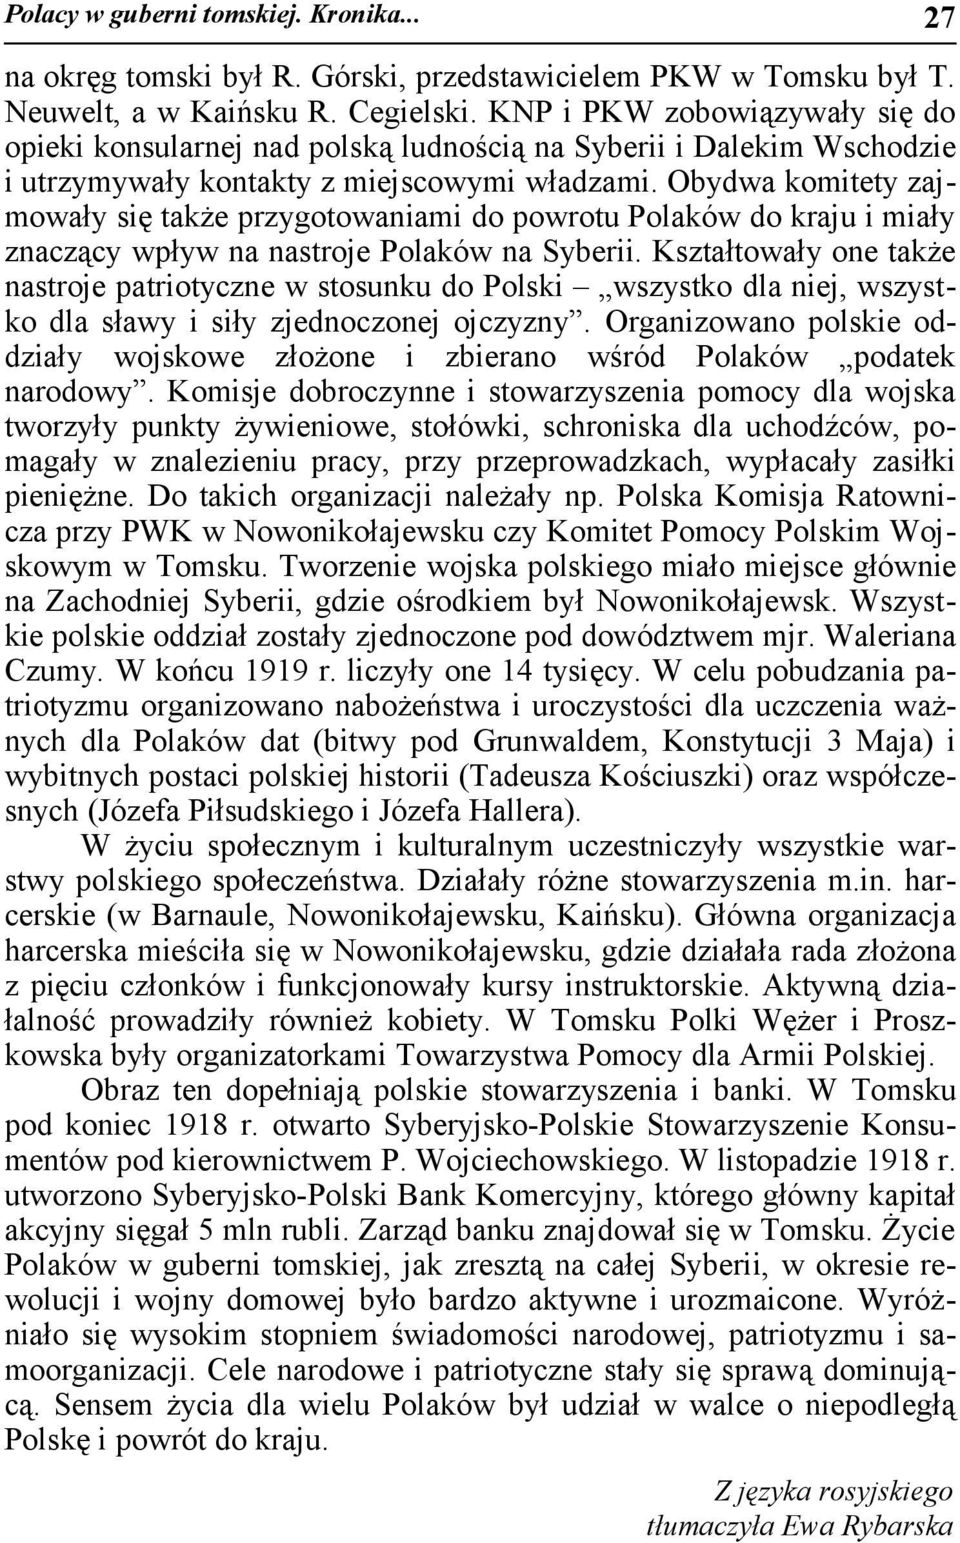 Obydwa komitety zajmowały się także przygotowaniami do powrotu Polaków do kraju i miały znaczący wpływ na nastroje Polaków na Syberii.